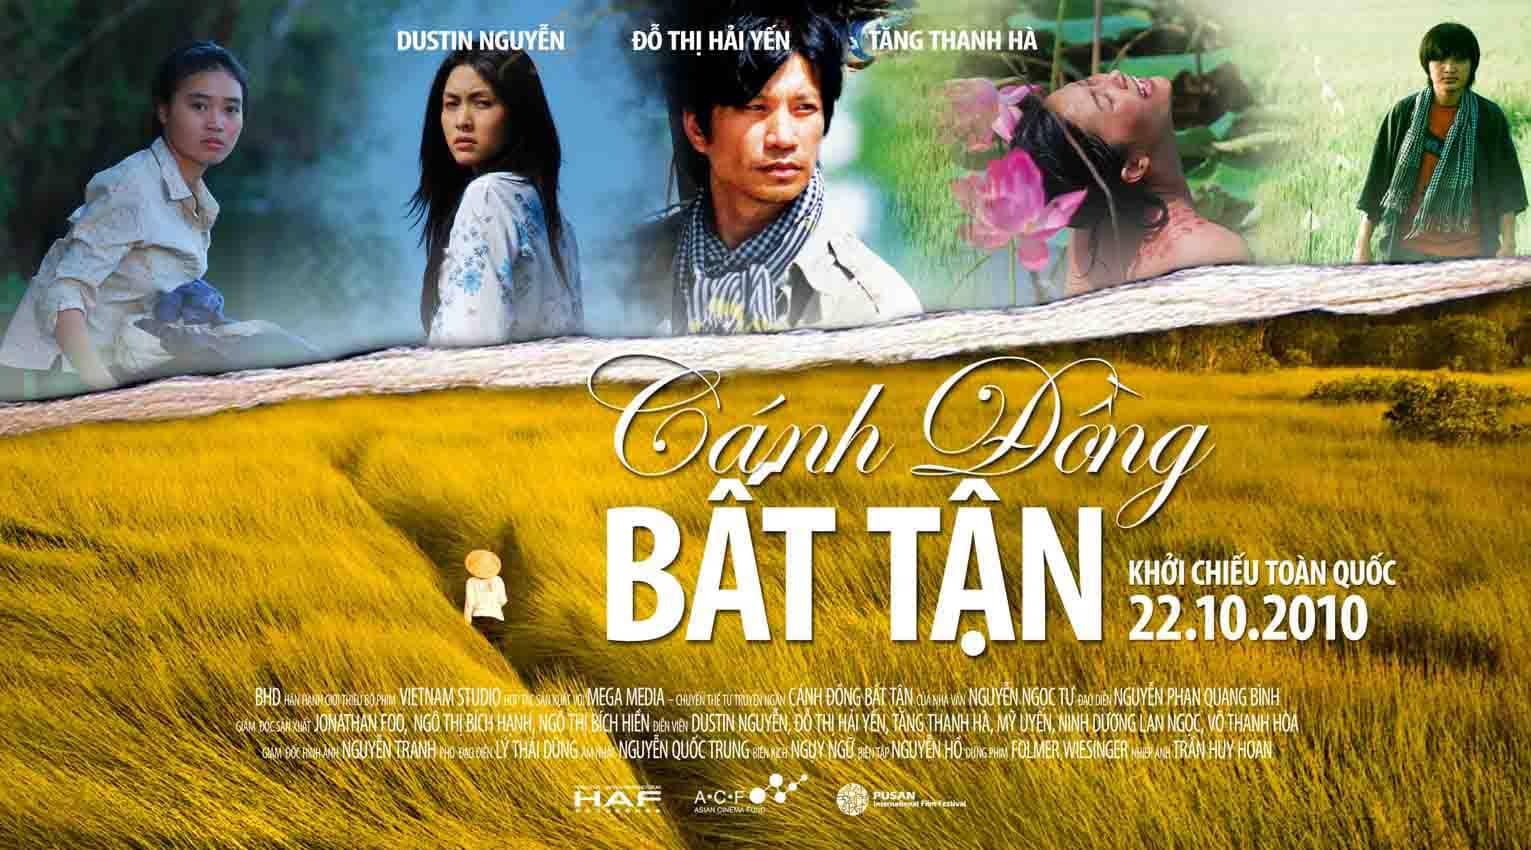 Canh Dong Bat Tan, película en el Mekong